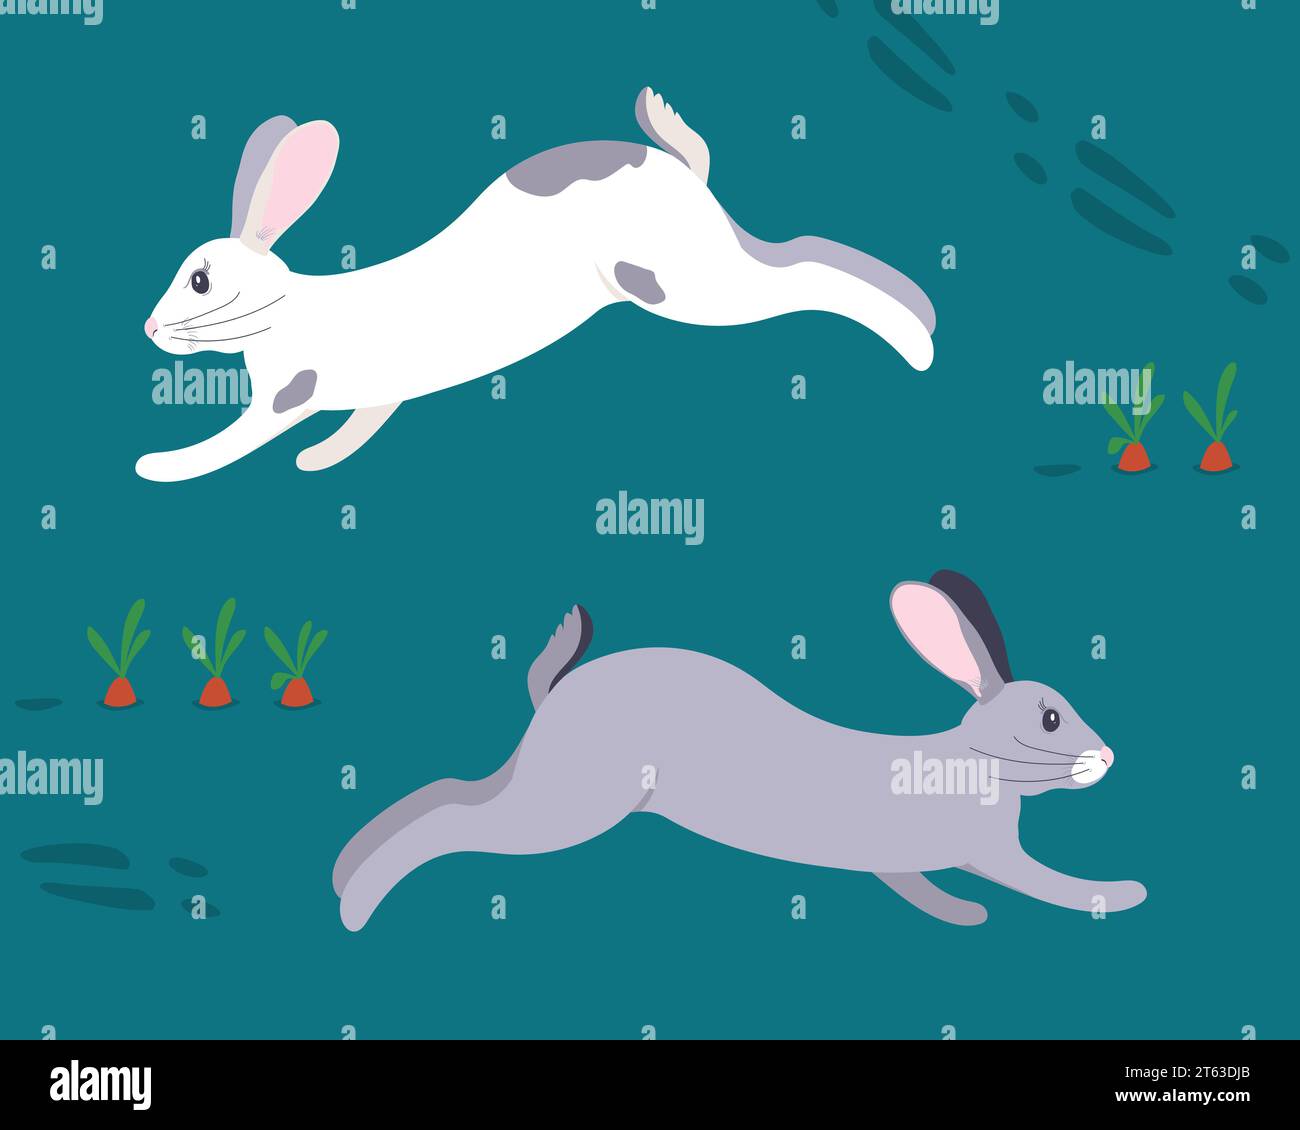 Vektorgrafiken von zwei Kaninchen auf einem Karottenbett. Illustration von weiß- und grau laufenden Kaninchen in einem Gemüsegarten. Pelztiere auf dem grünen Gras Stock Vektor